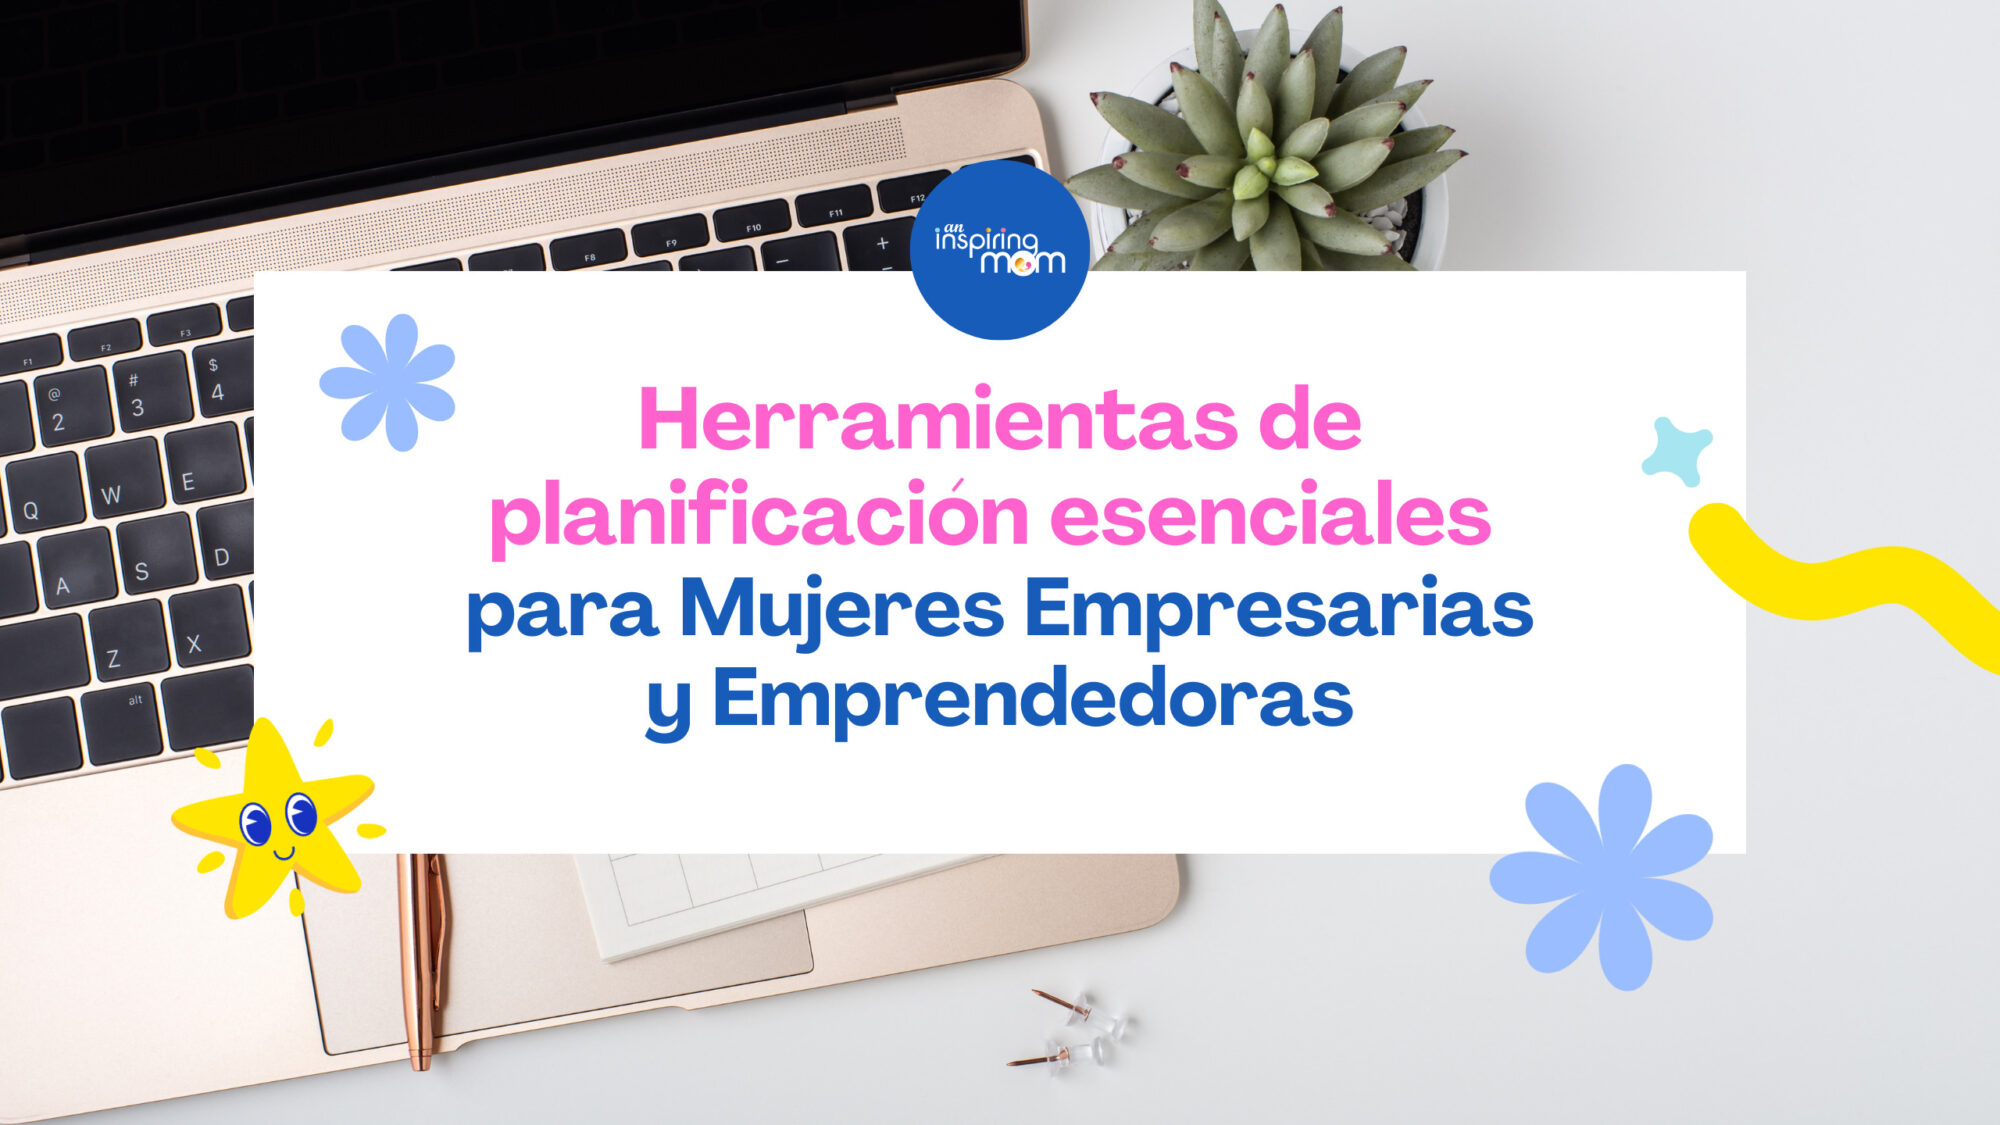 Herramientas de planificación esenciales para Mujeres Empresarias y Emprendedoras (1)